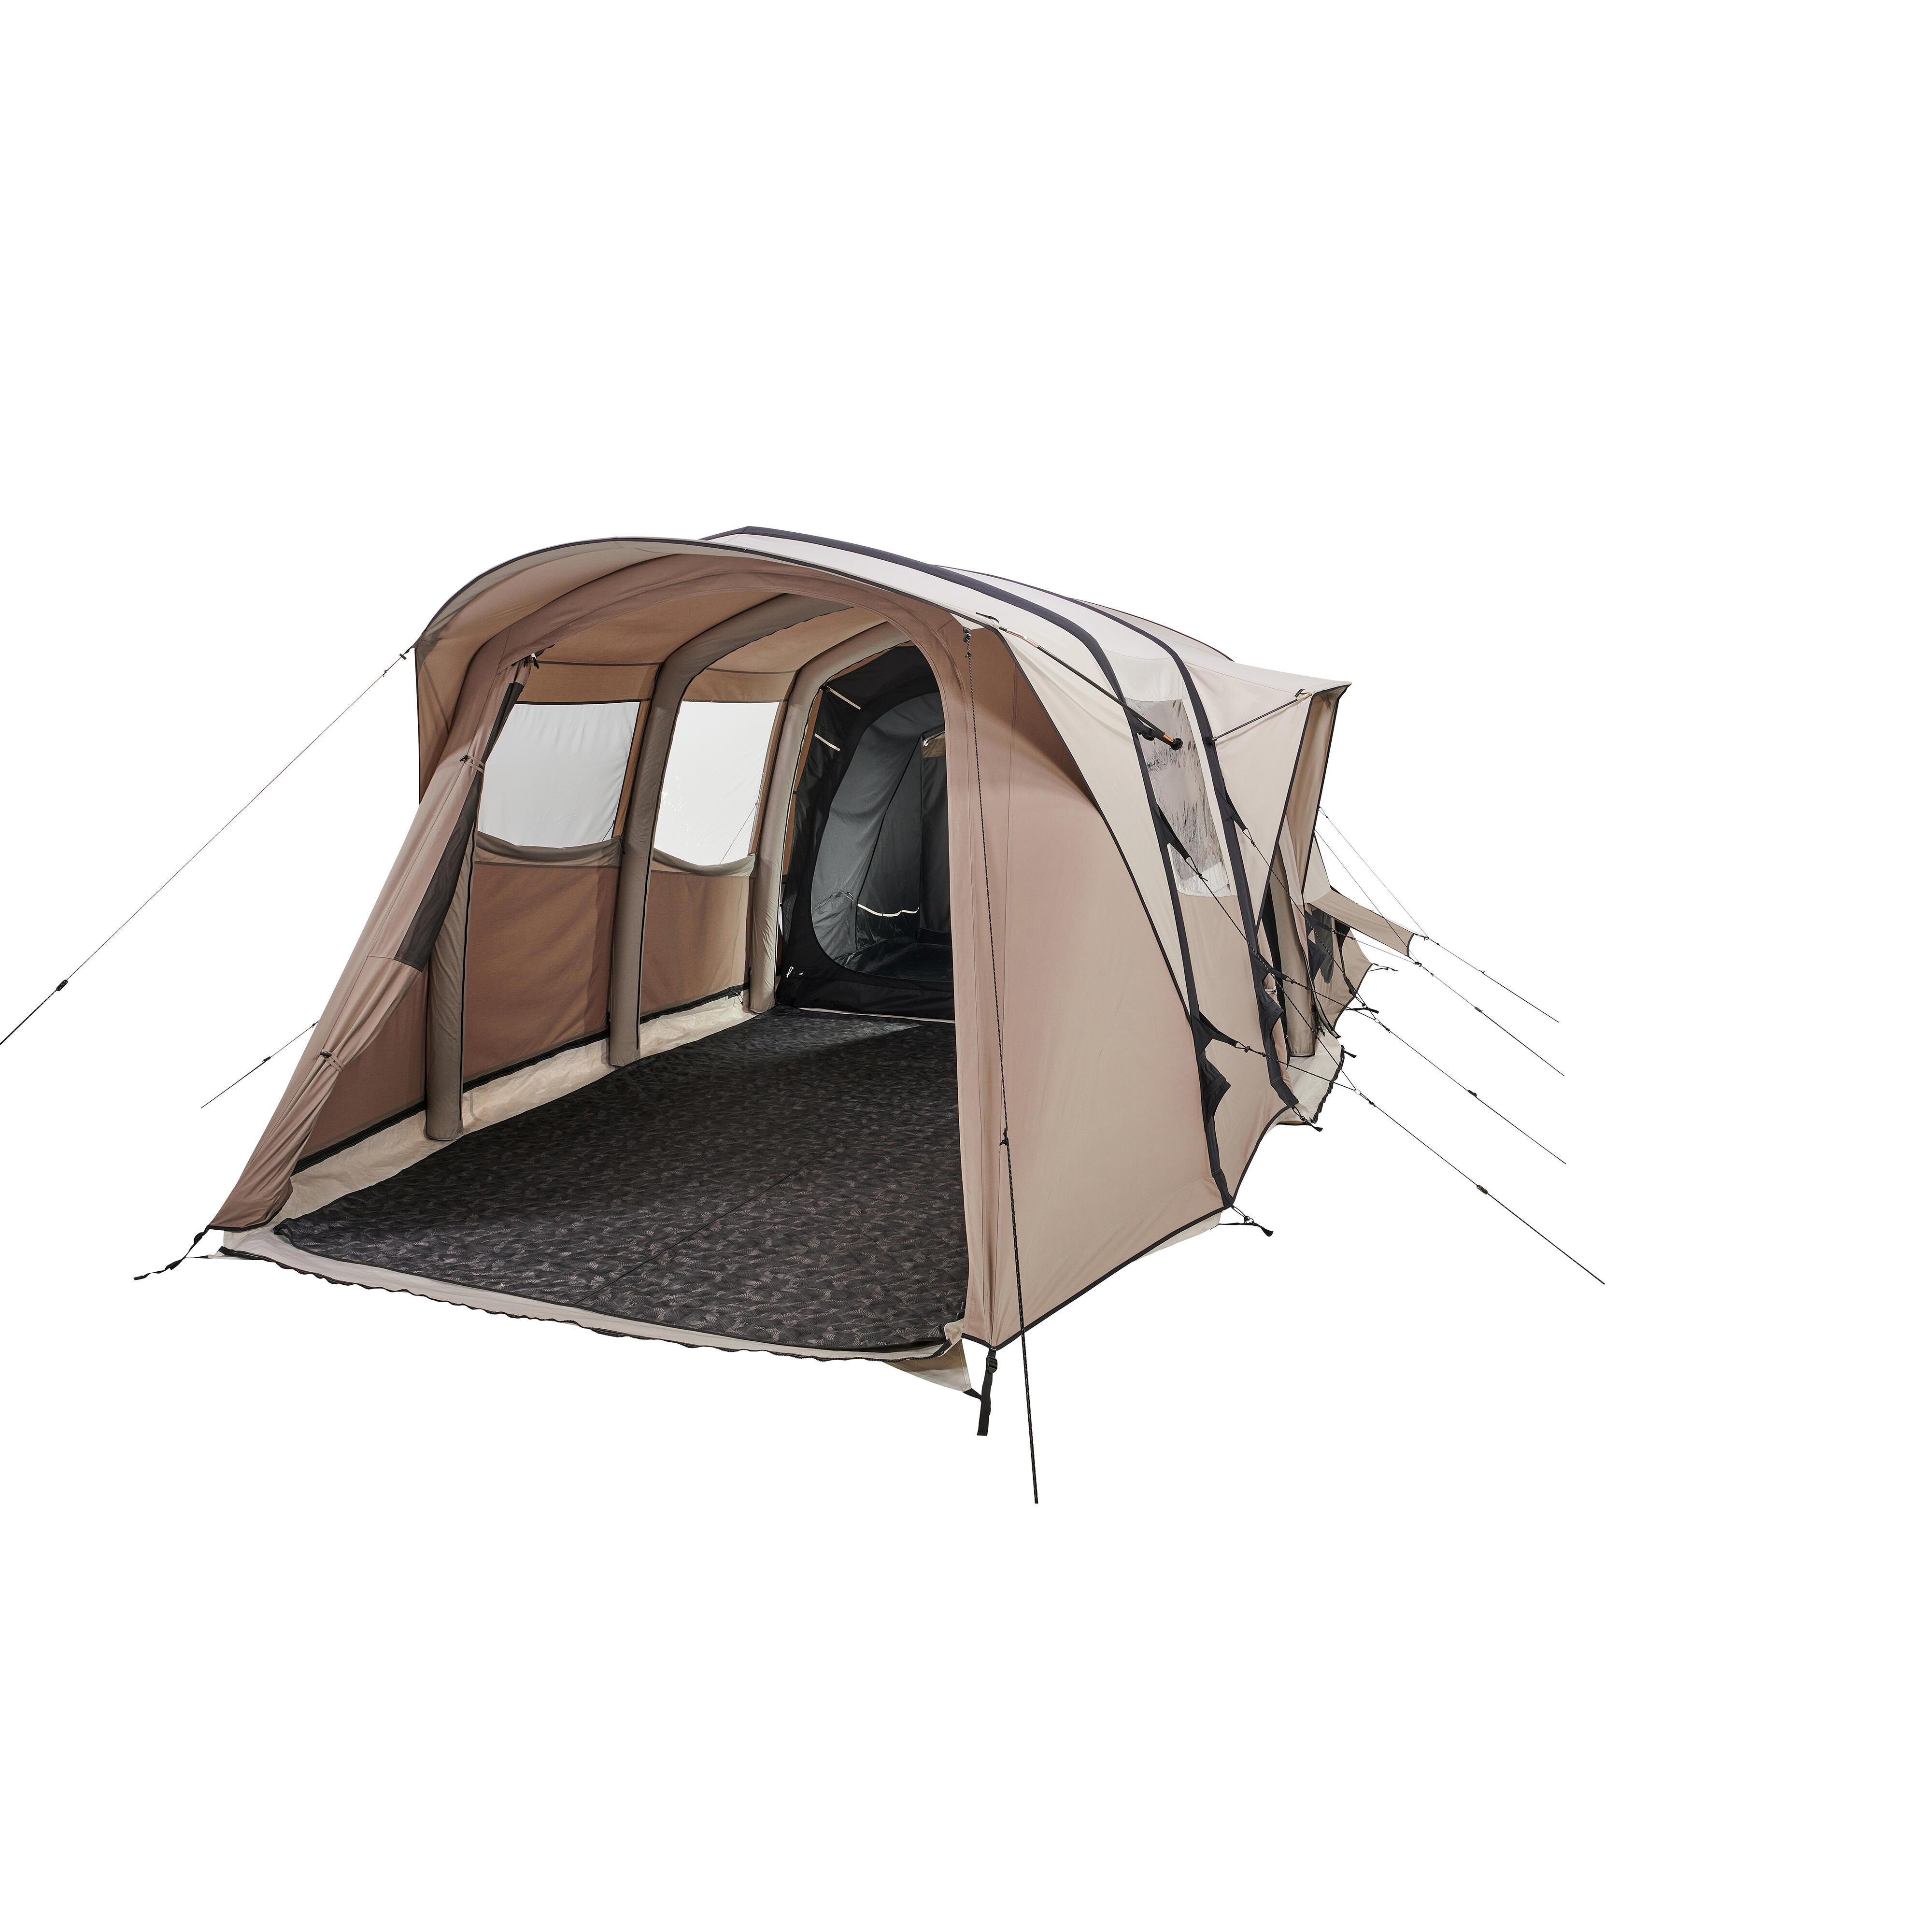 Cort structură gonflabilă camping AirSeconds 6.3 Polibumbac 6 Persoane 3 Camere decathlon.ro  Articole pentru camping